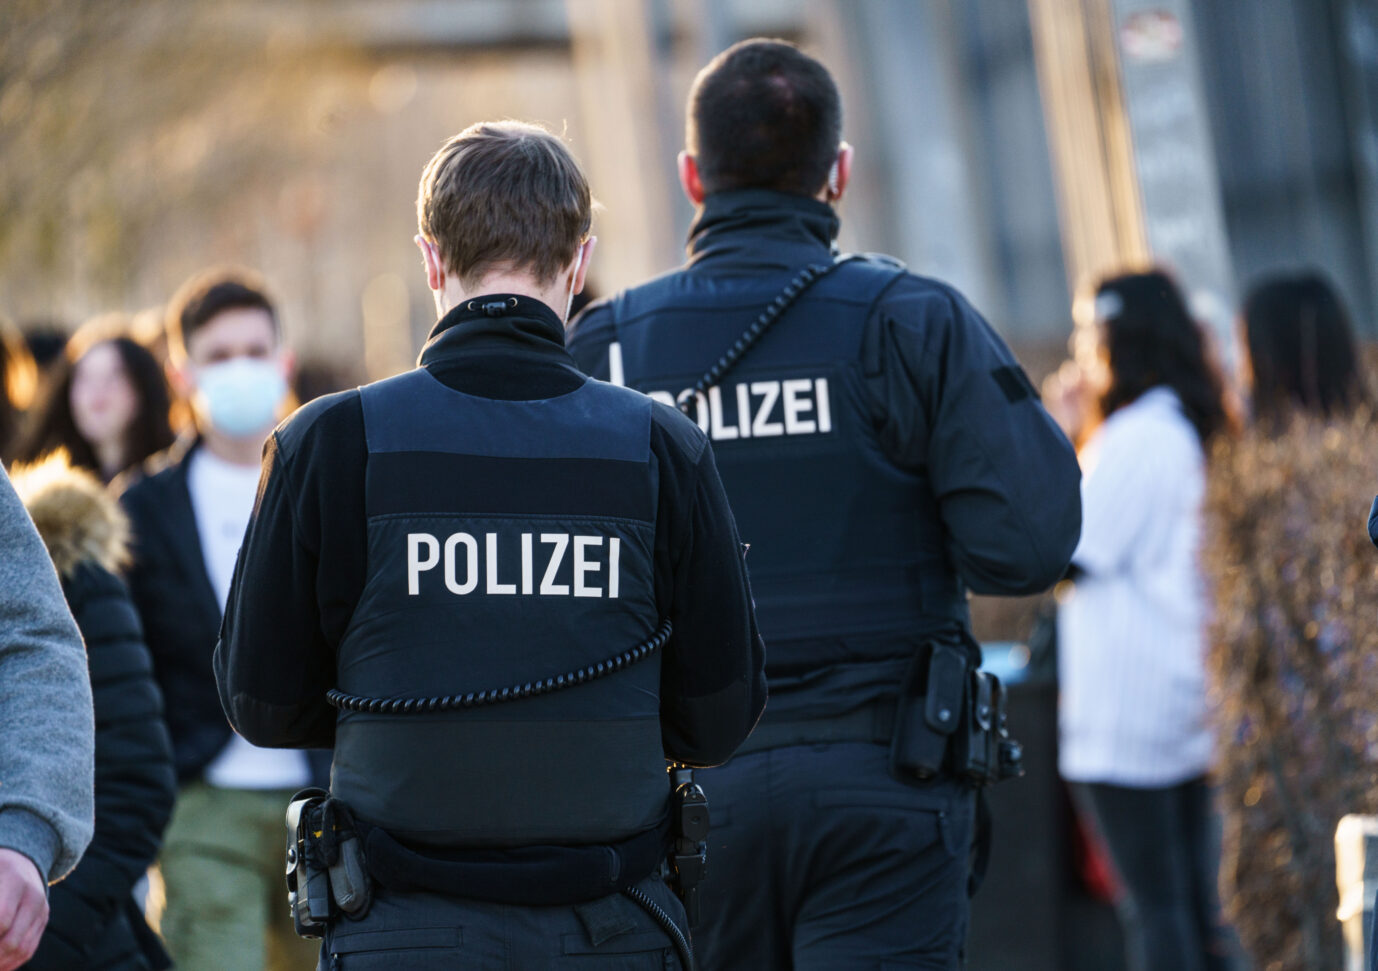 Ein 19jähriger Afghane sticht in Frankfurt eine Frau nieder. Der Täter sitzt in Untersuchungshaft, die Frau wurde schwer verletzt.